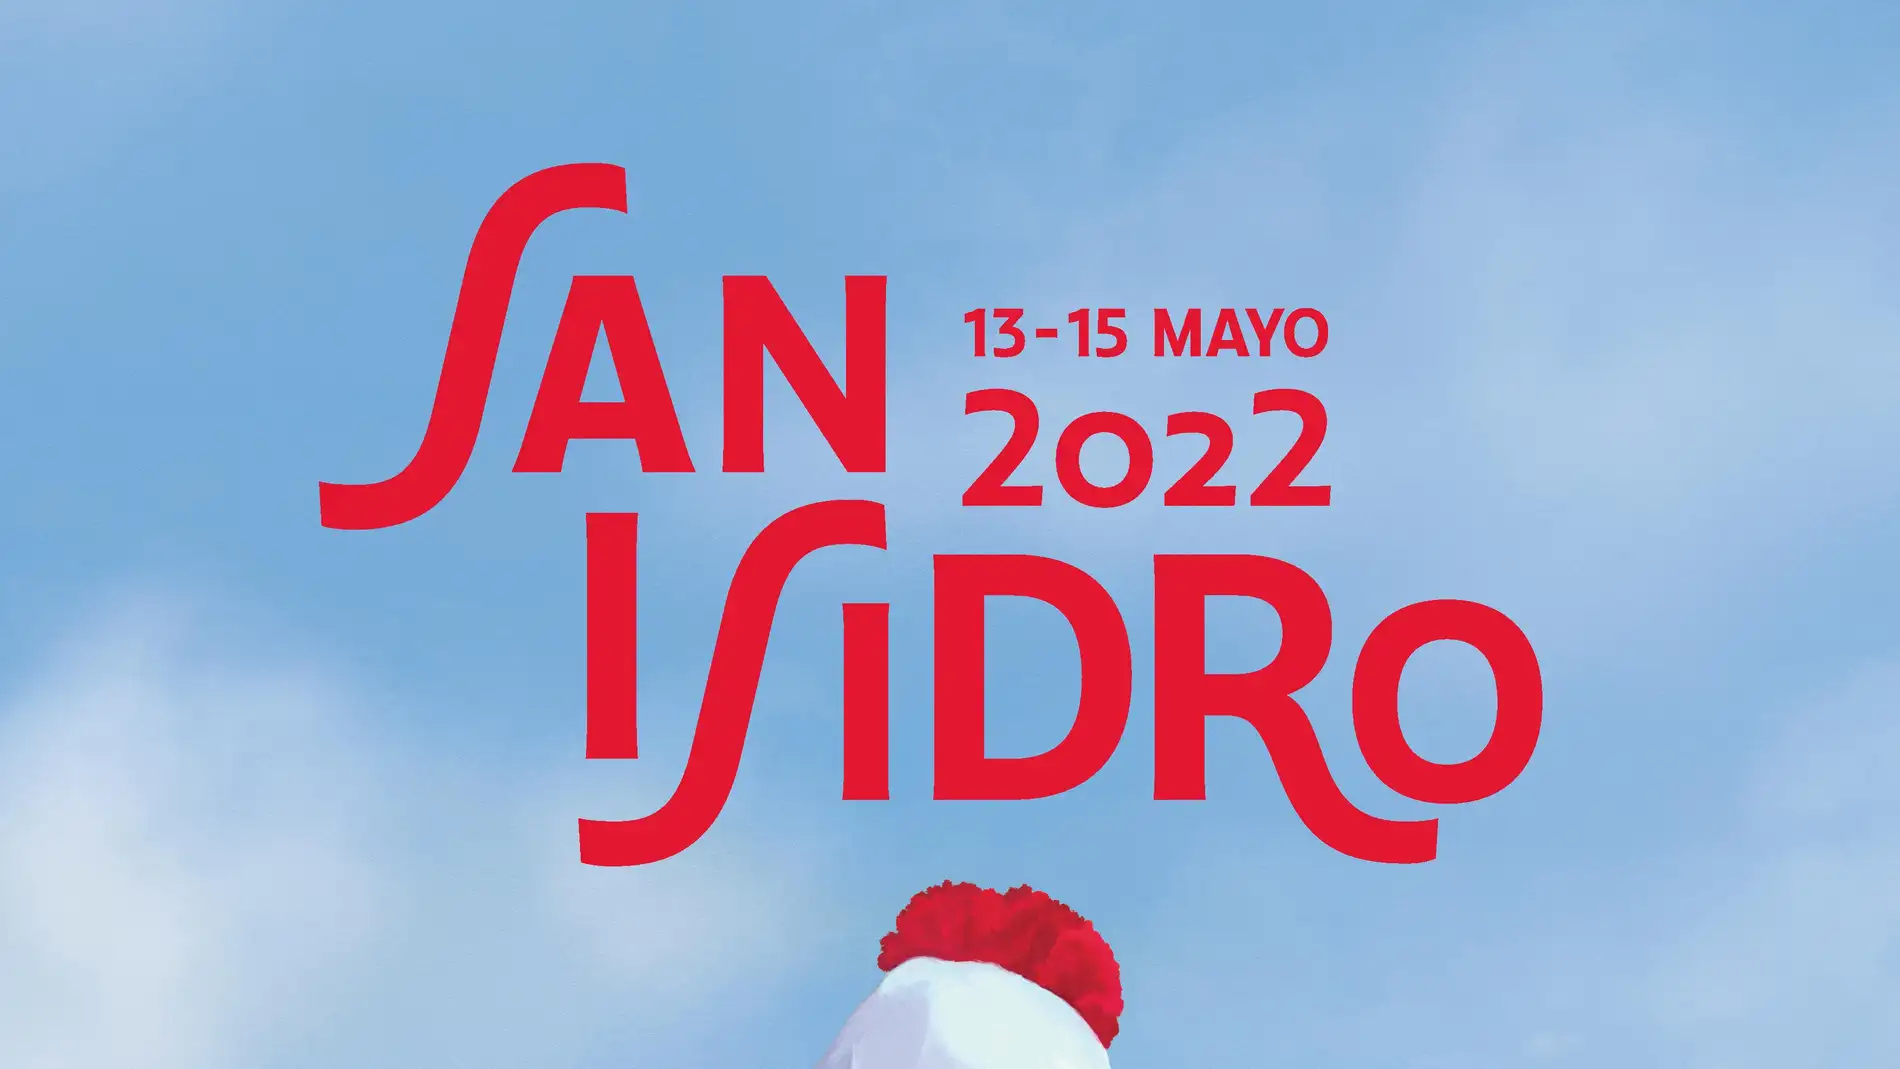 San Isidro 2022: ¿qué días son festivos y que tienen fiesta? | Cero Radio